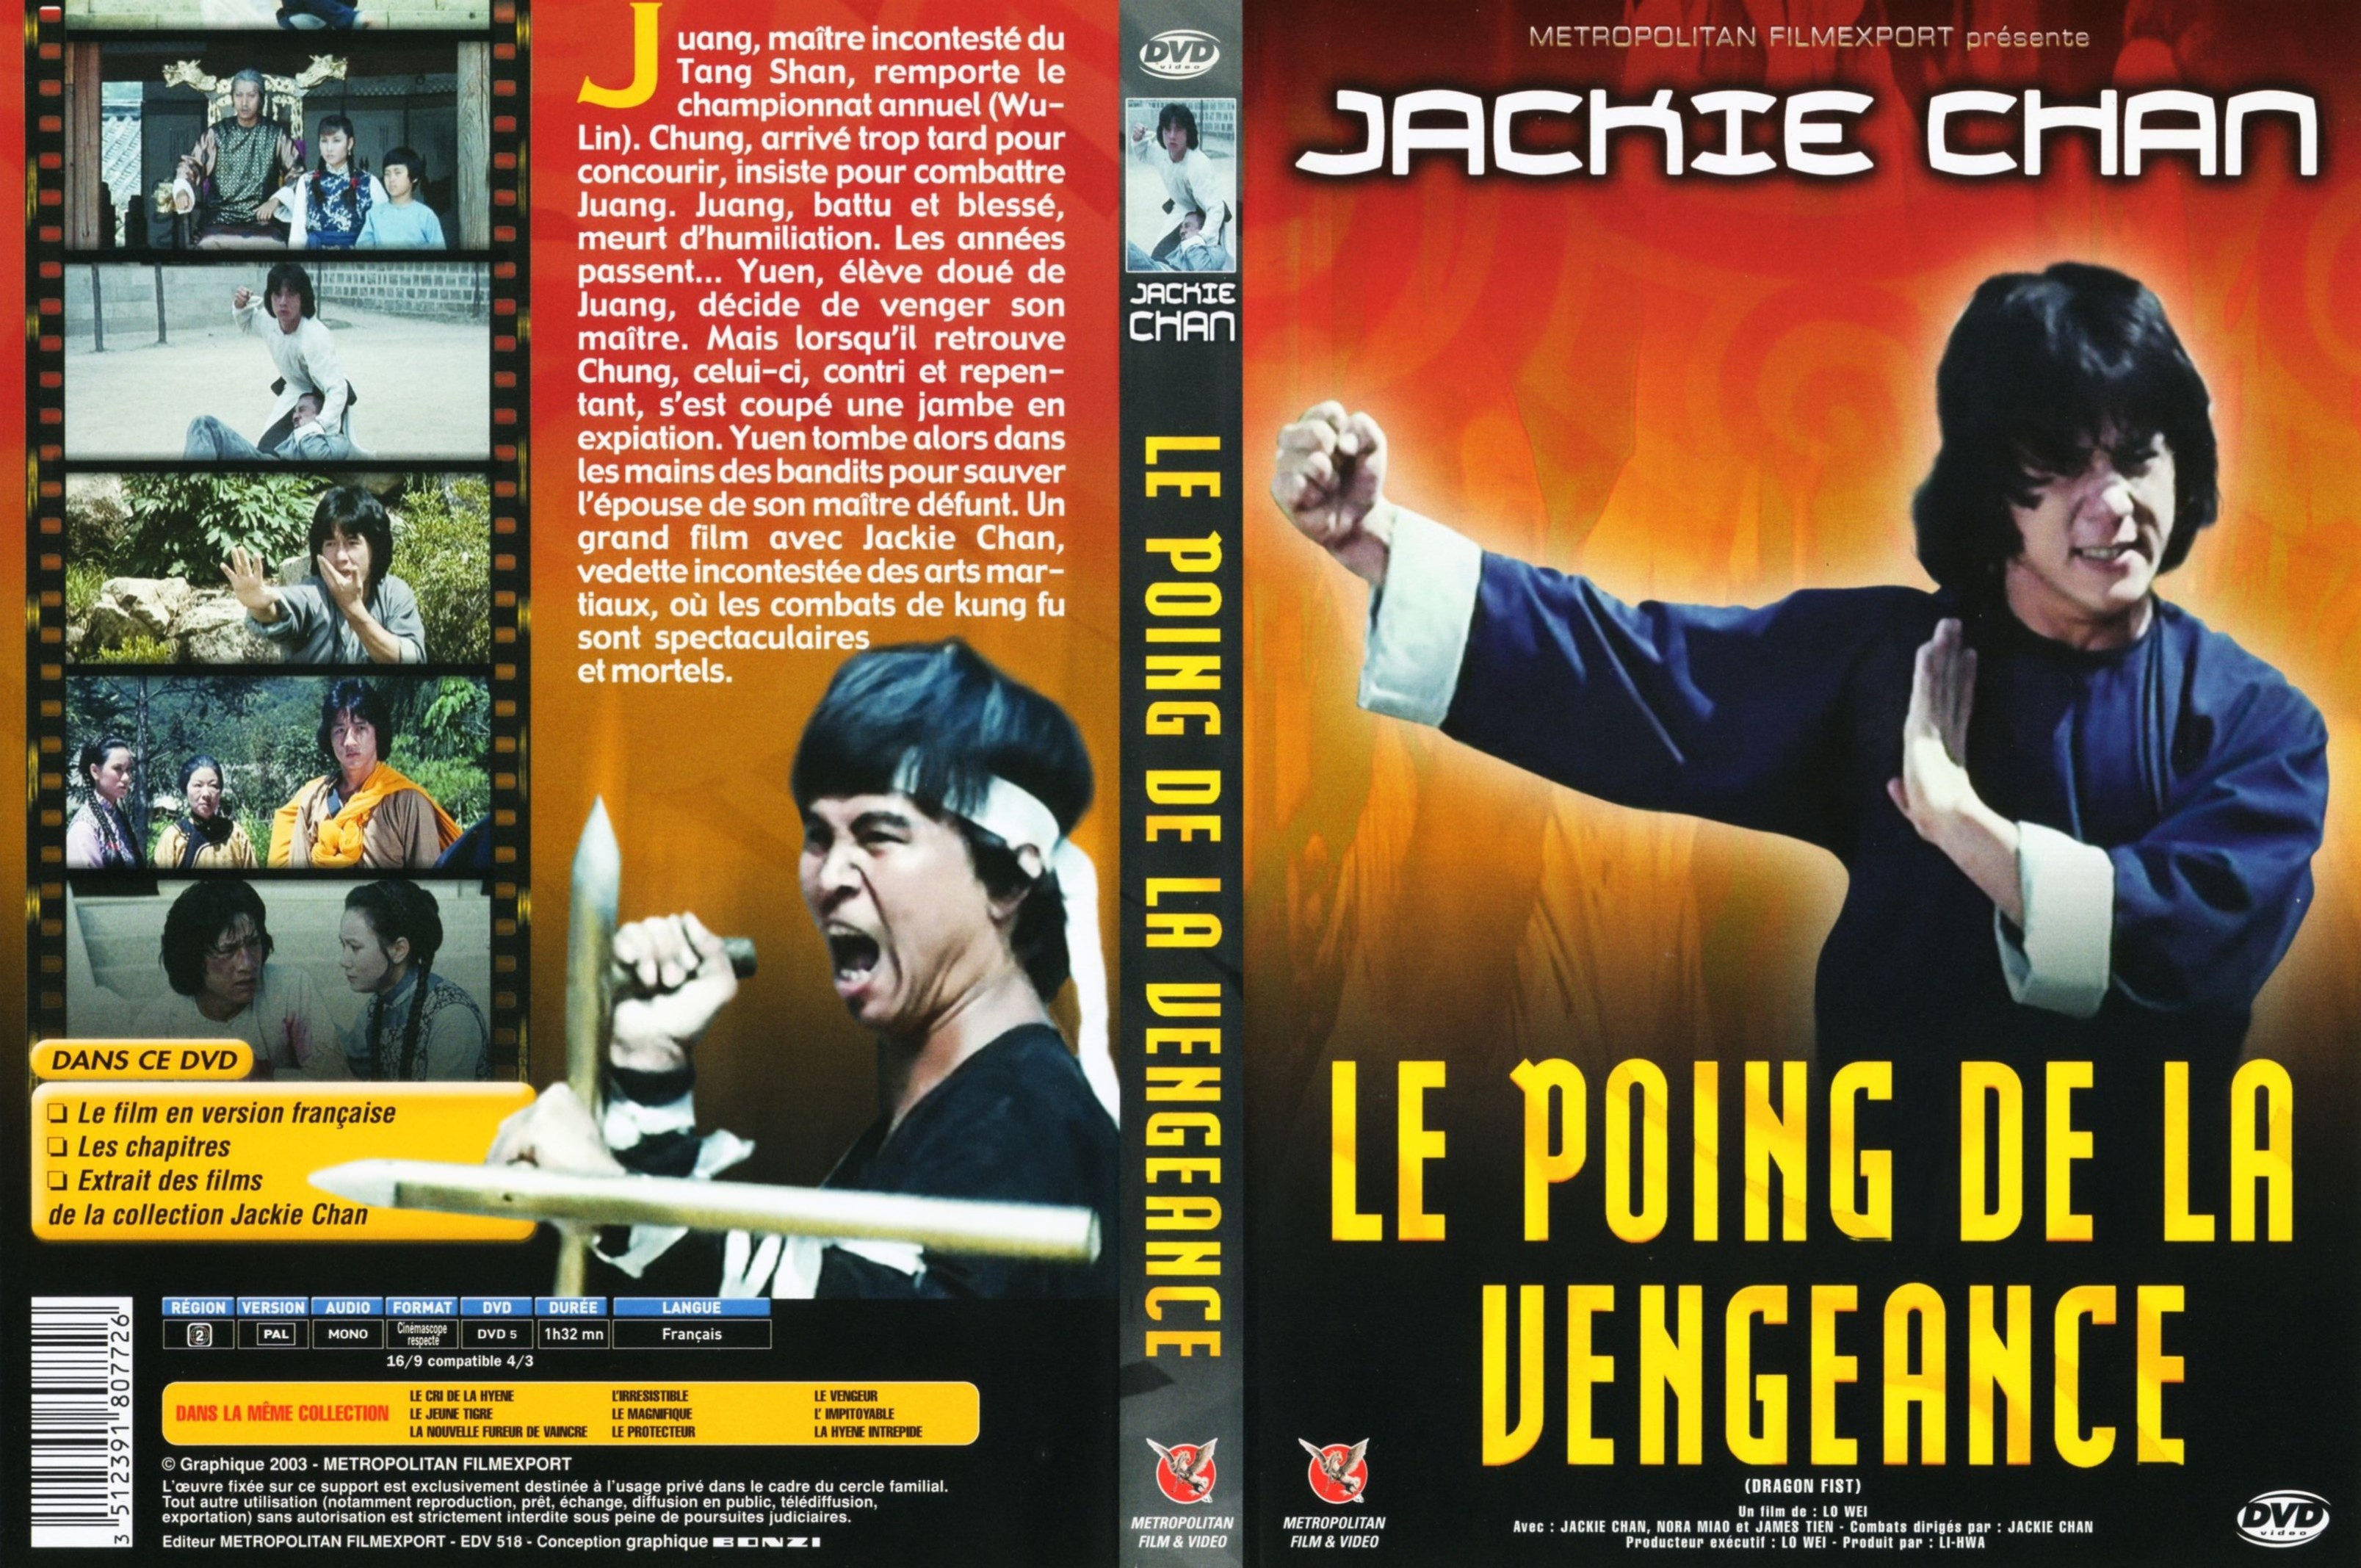 Jaquette DVD Le poing de la vengeance v3